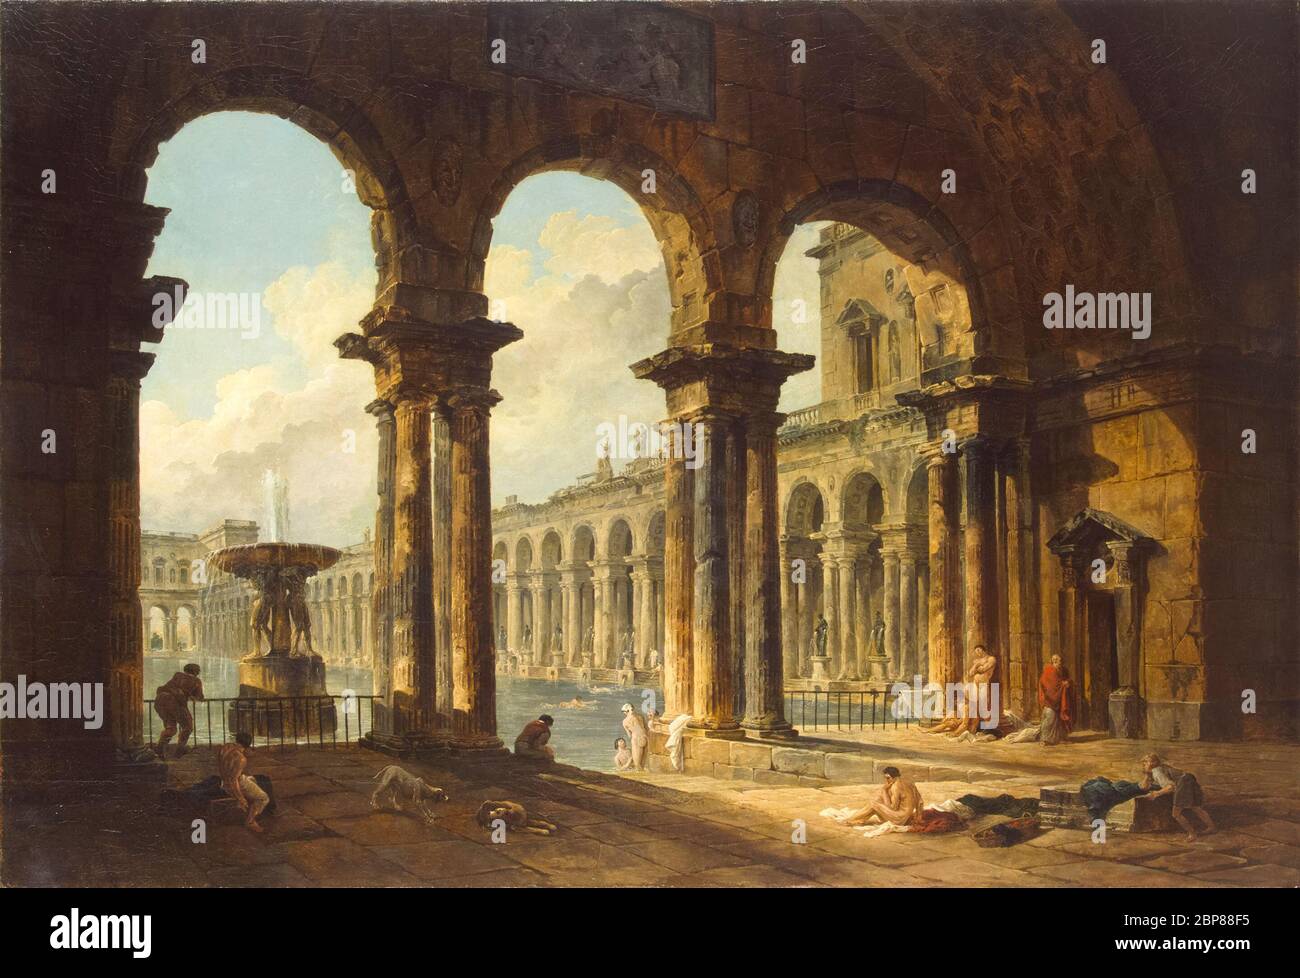 Hubert Robert, ruines anciennes utilisées comme bains publics, peinture, 1798 Banque D'Images